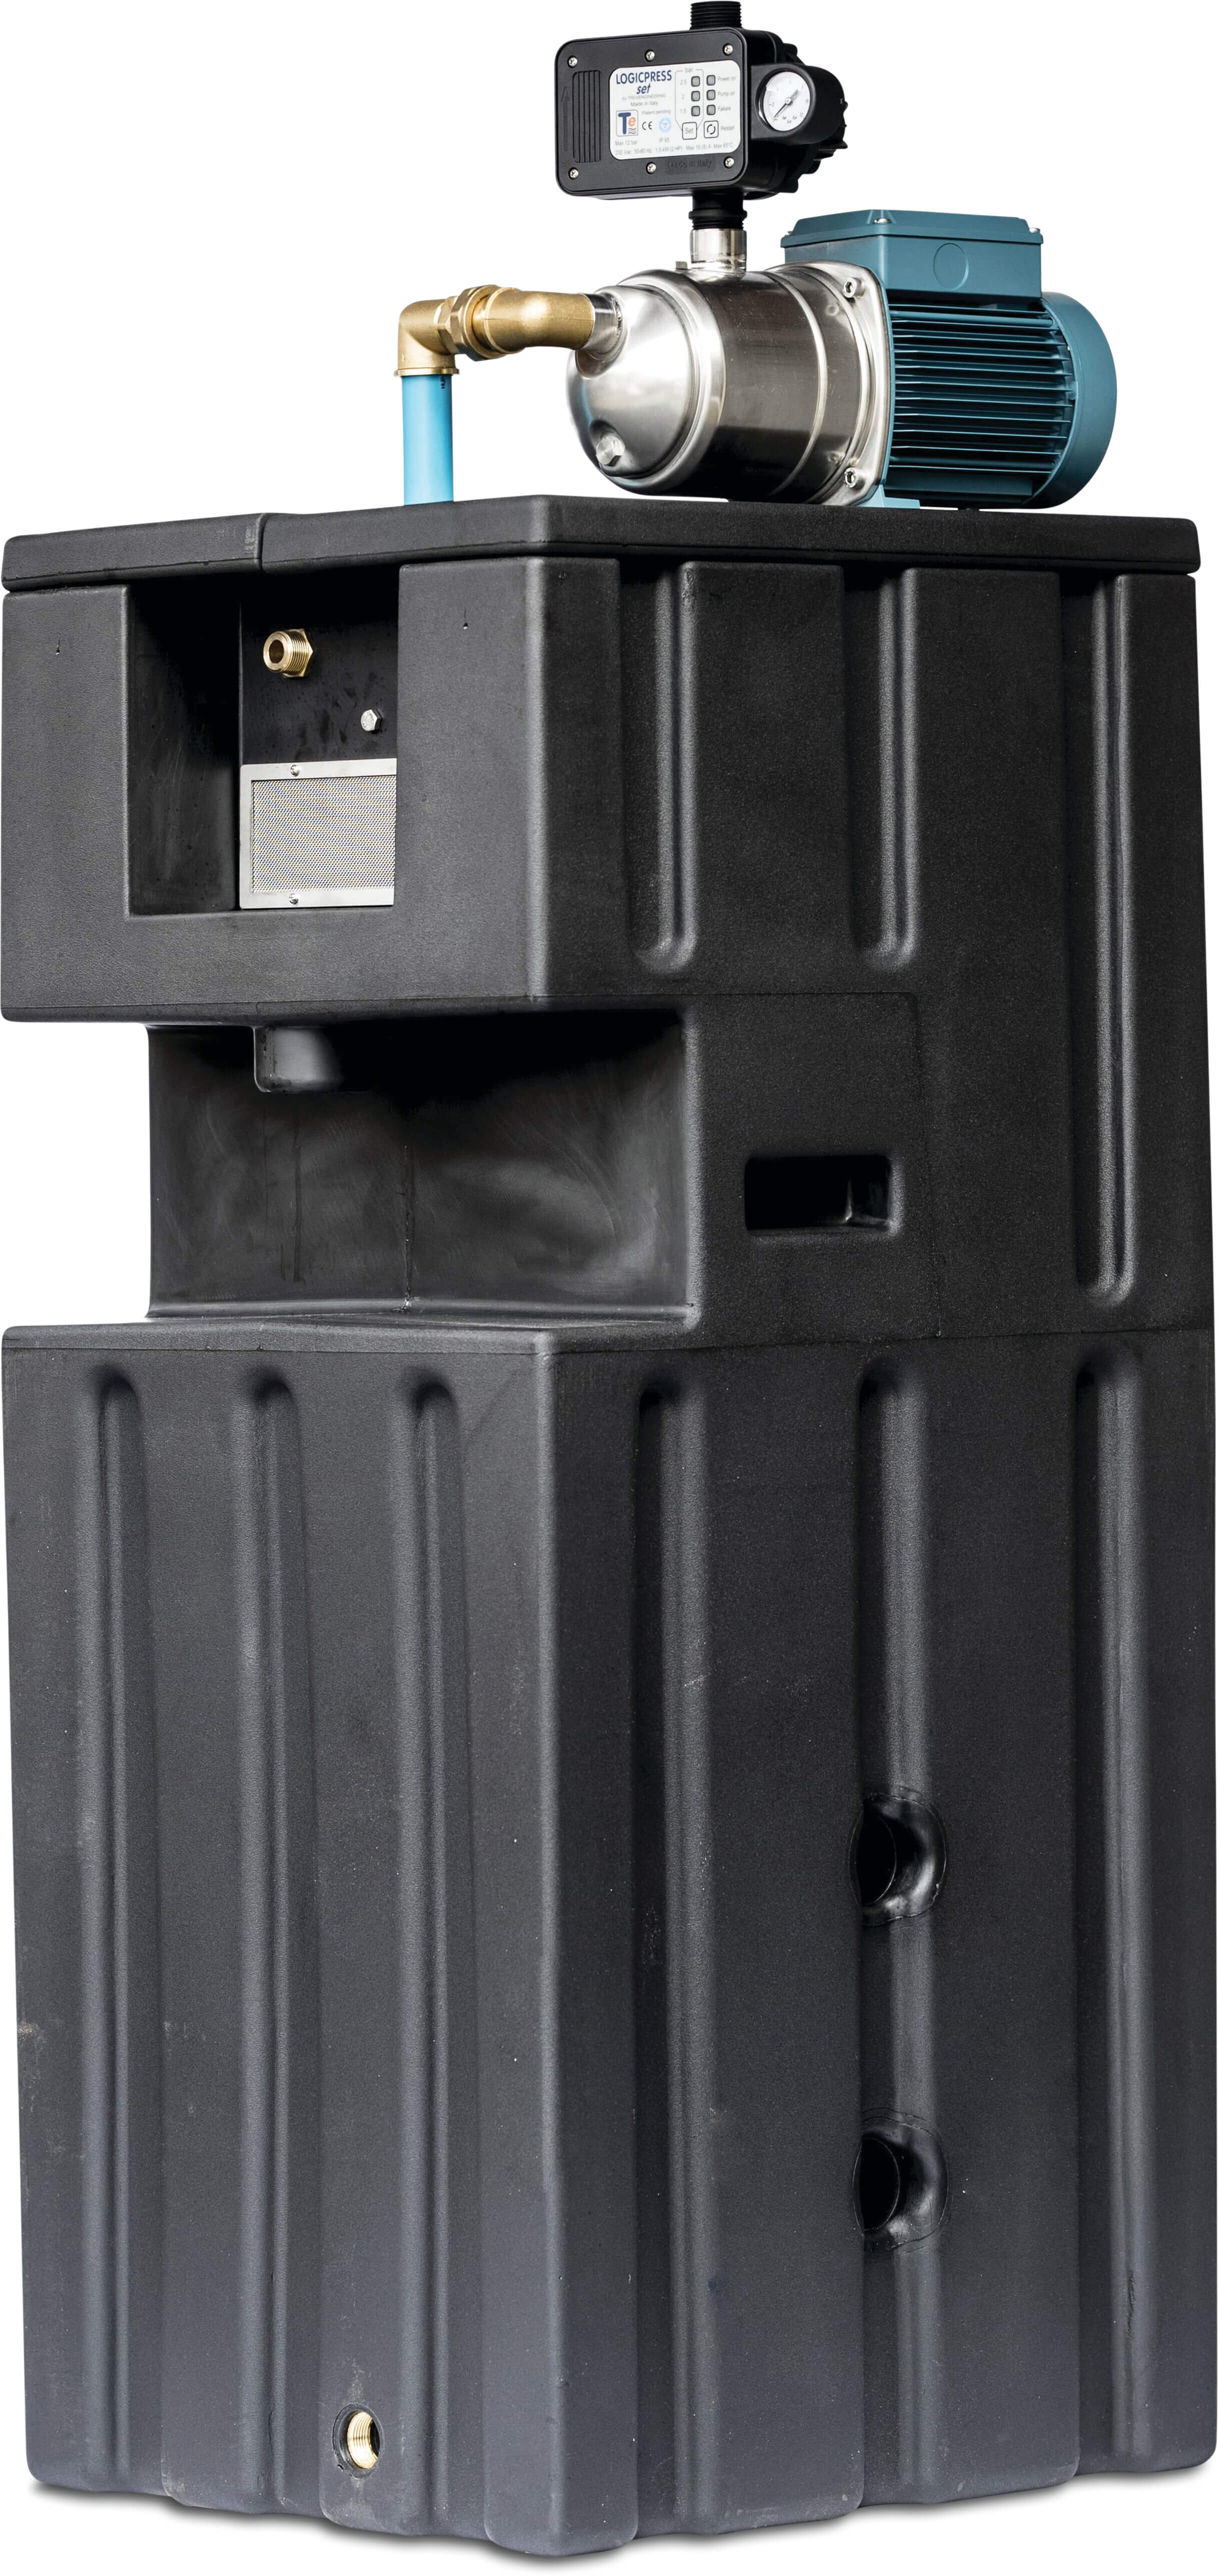 Trykforøgeranlæg 3/4" x 1" udvendig gevind 230VAC BELGAQUA type Combi DSCT med MXAM 204 & Logicpres Set